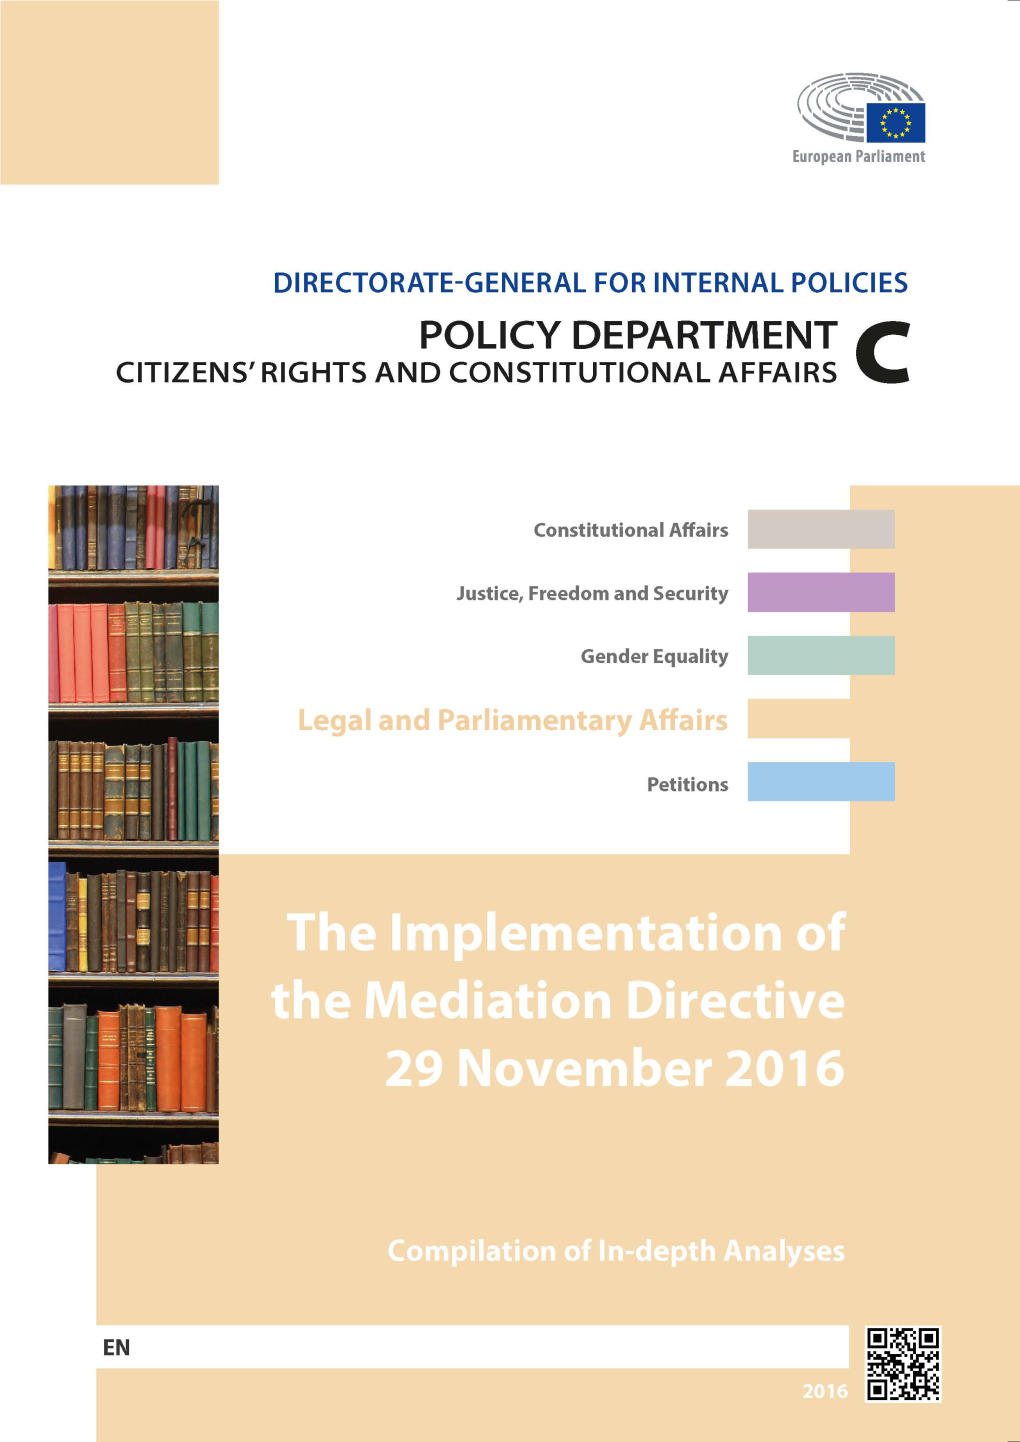 The Implementation of the Mediation Directive WORKSHOP 29 November 2016